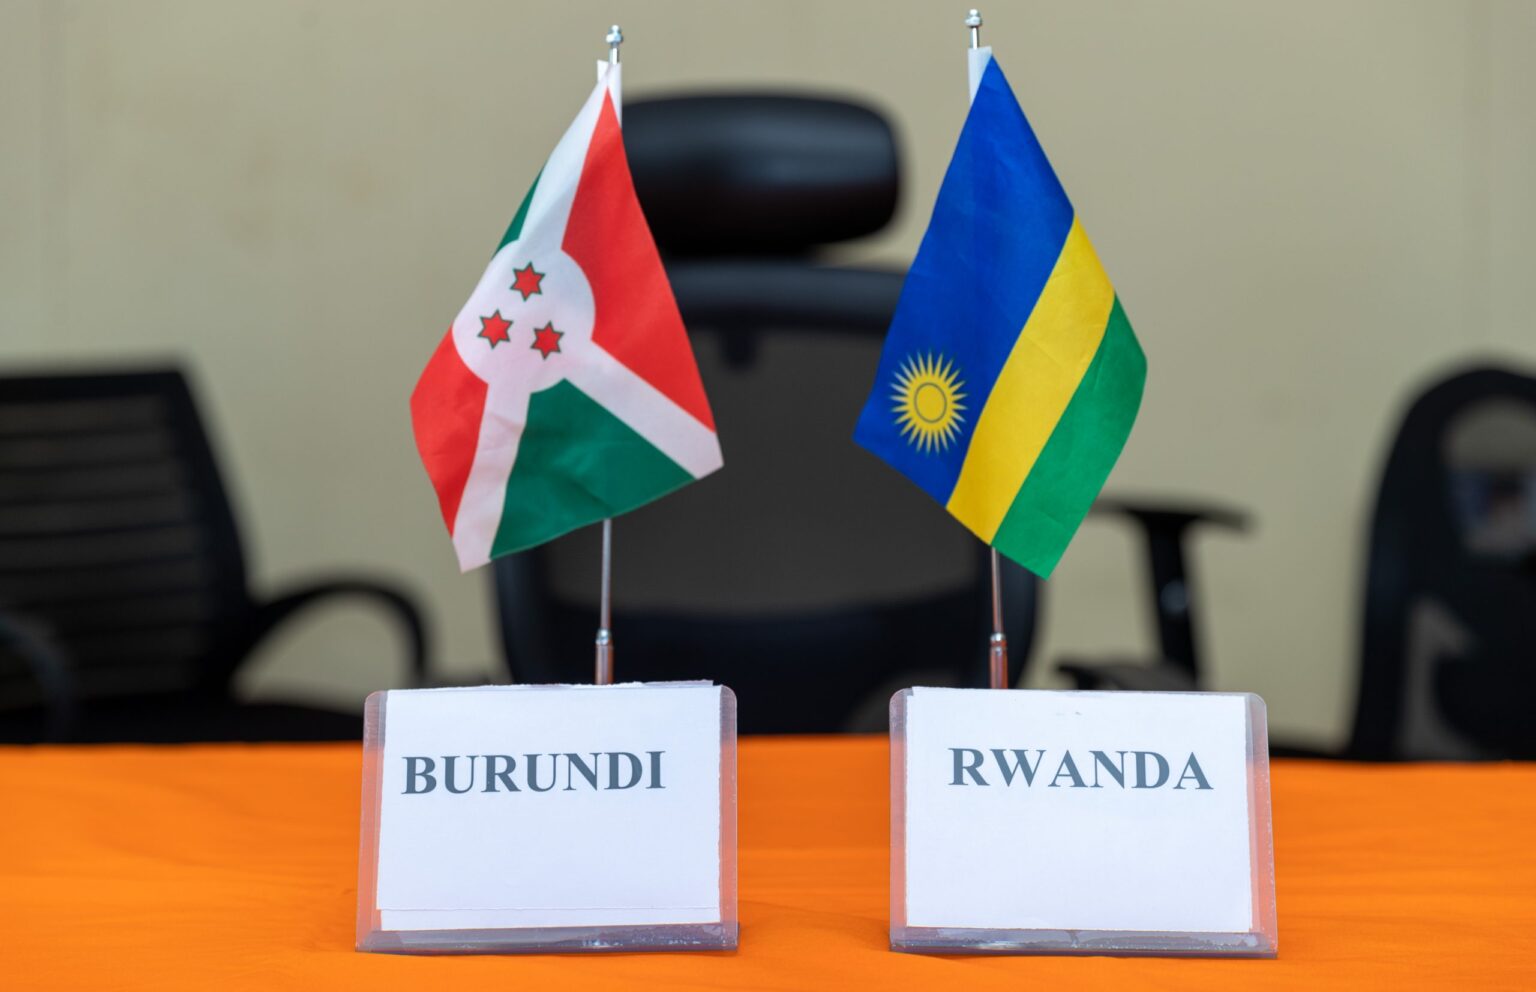 Burundi and Rwanda relations